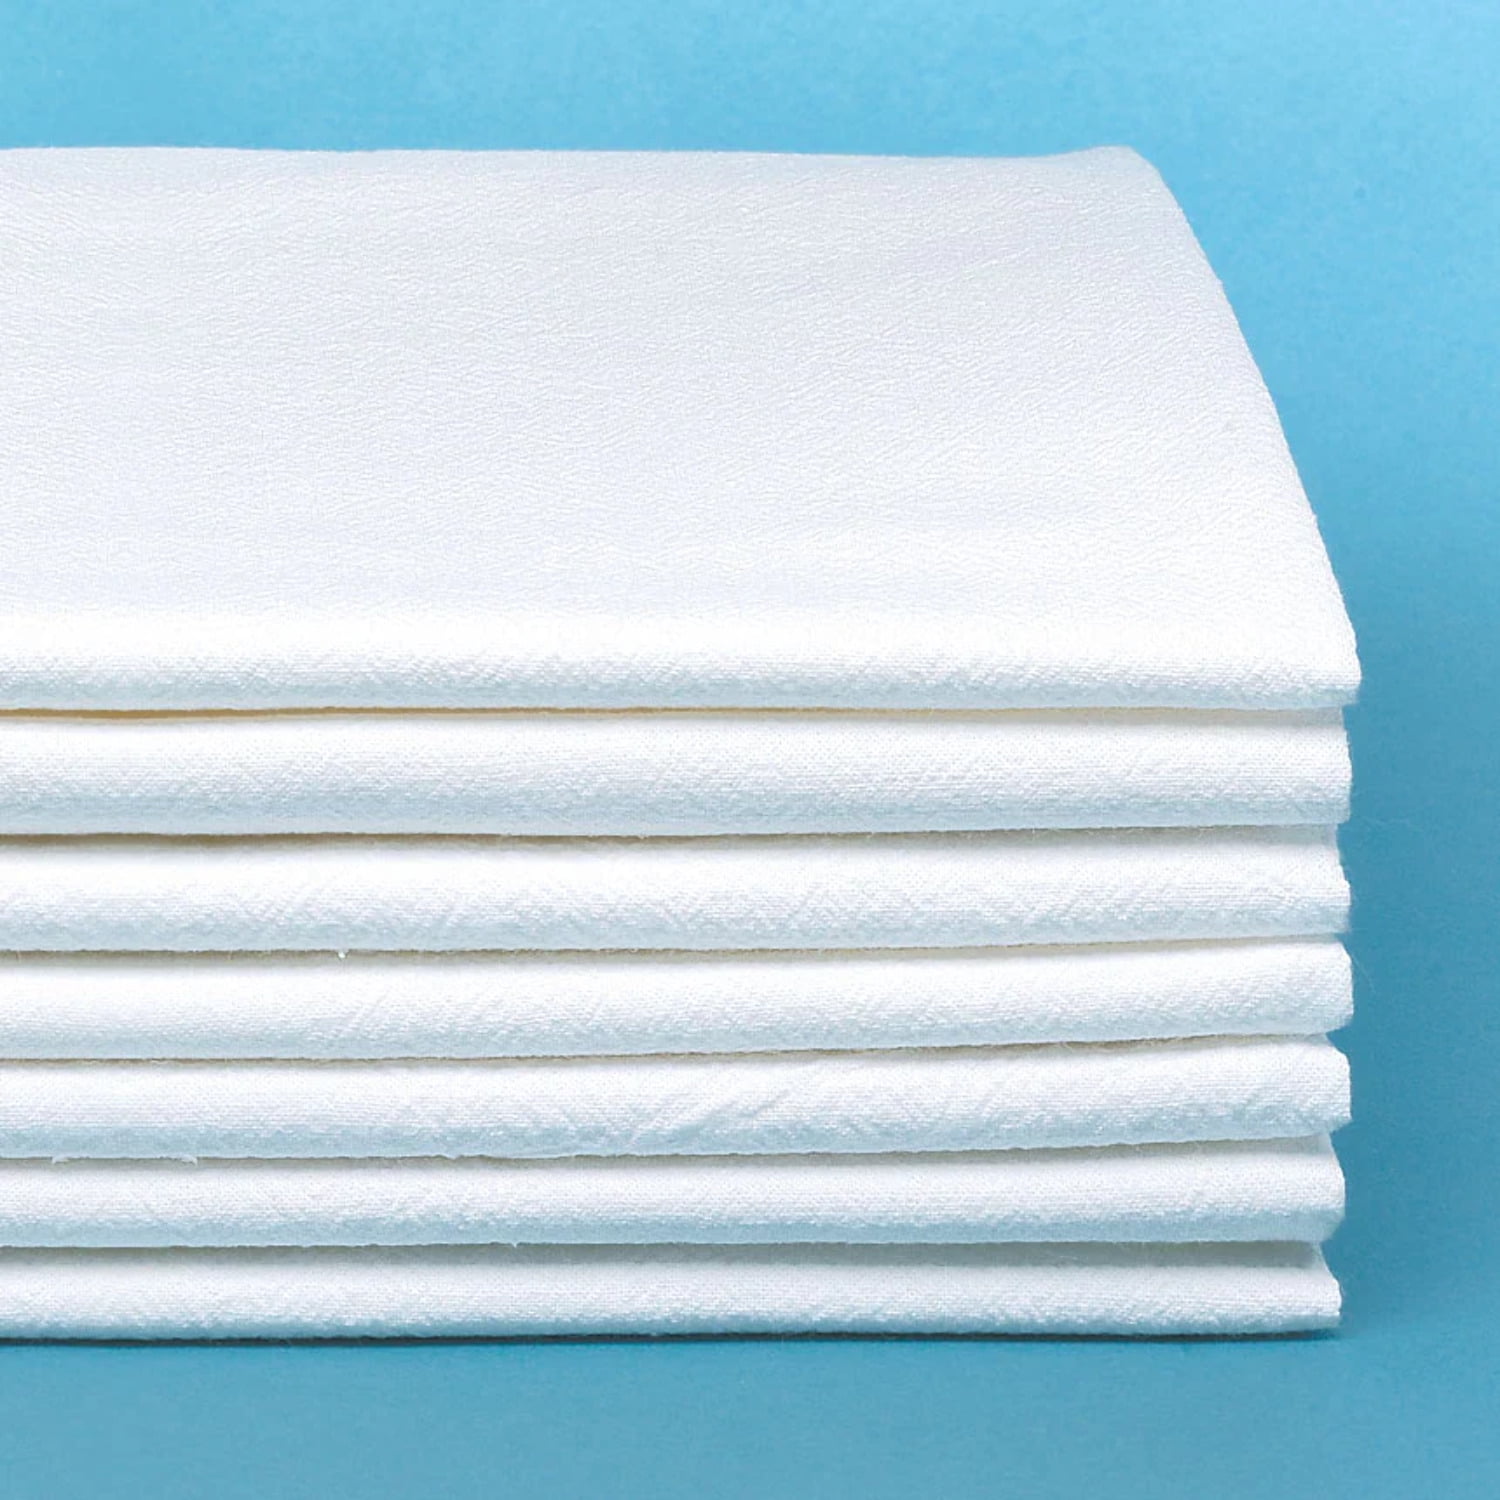 Cotton Flour Sack Towel (28 x 28 Inch / White)